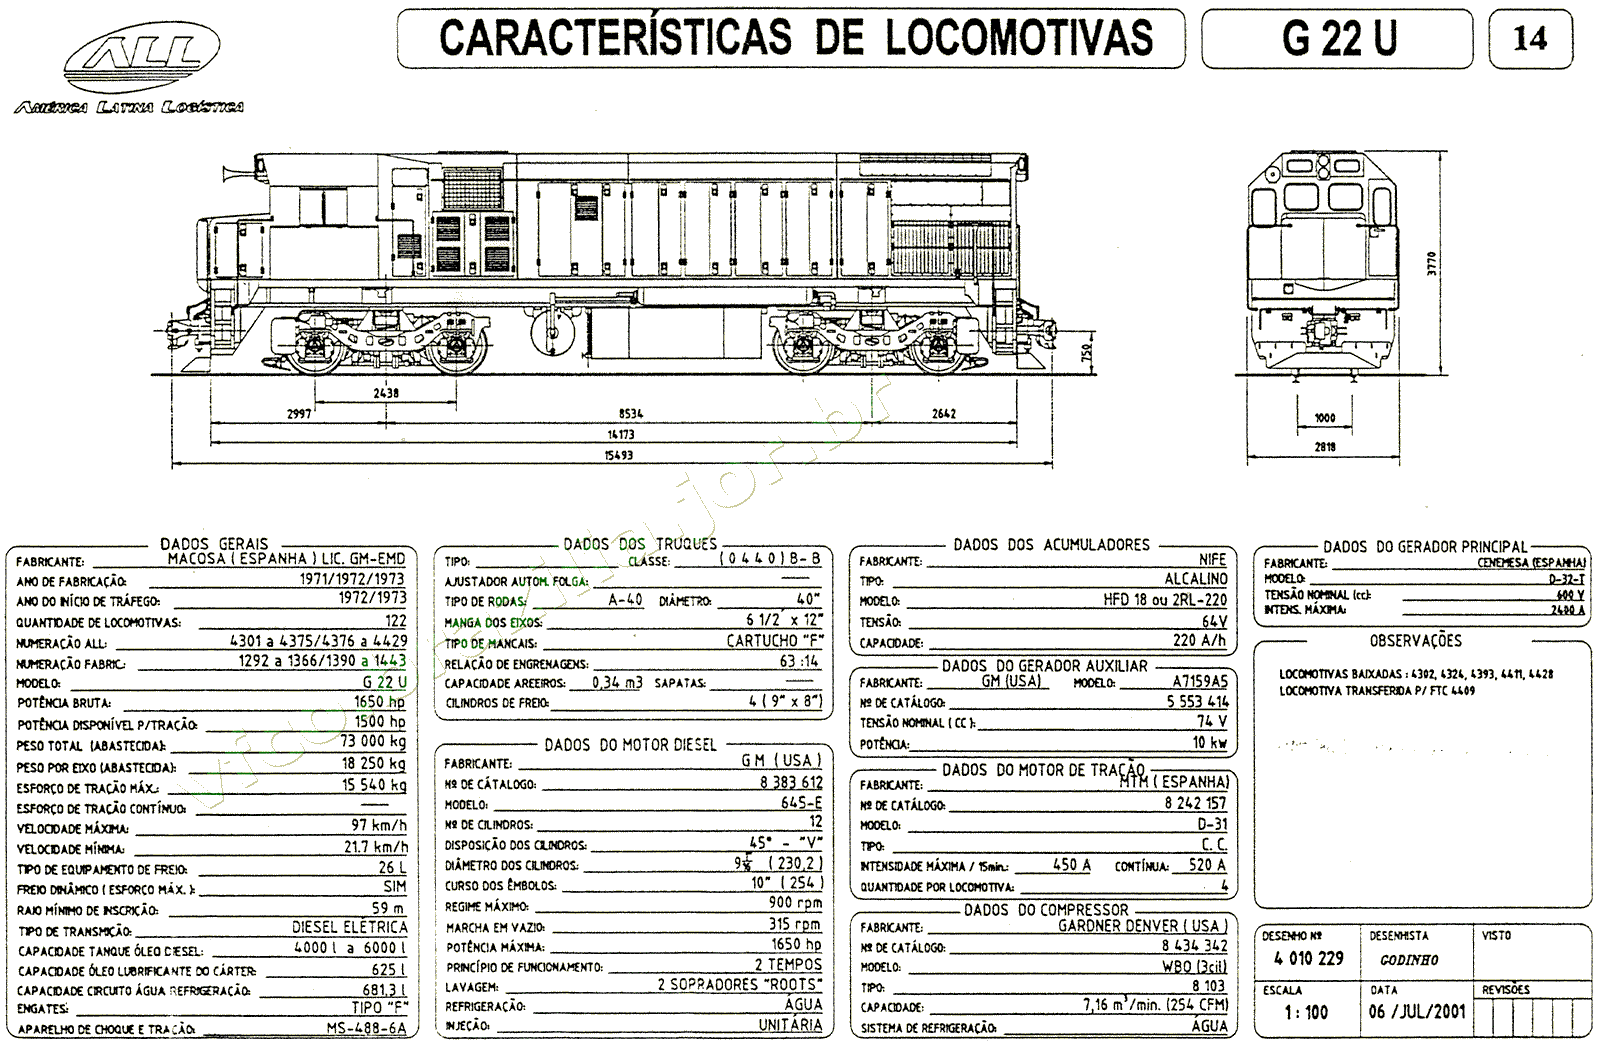 Dimensões e características da Locomotiva G22U da ferrovia ALL